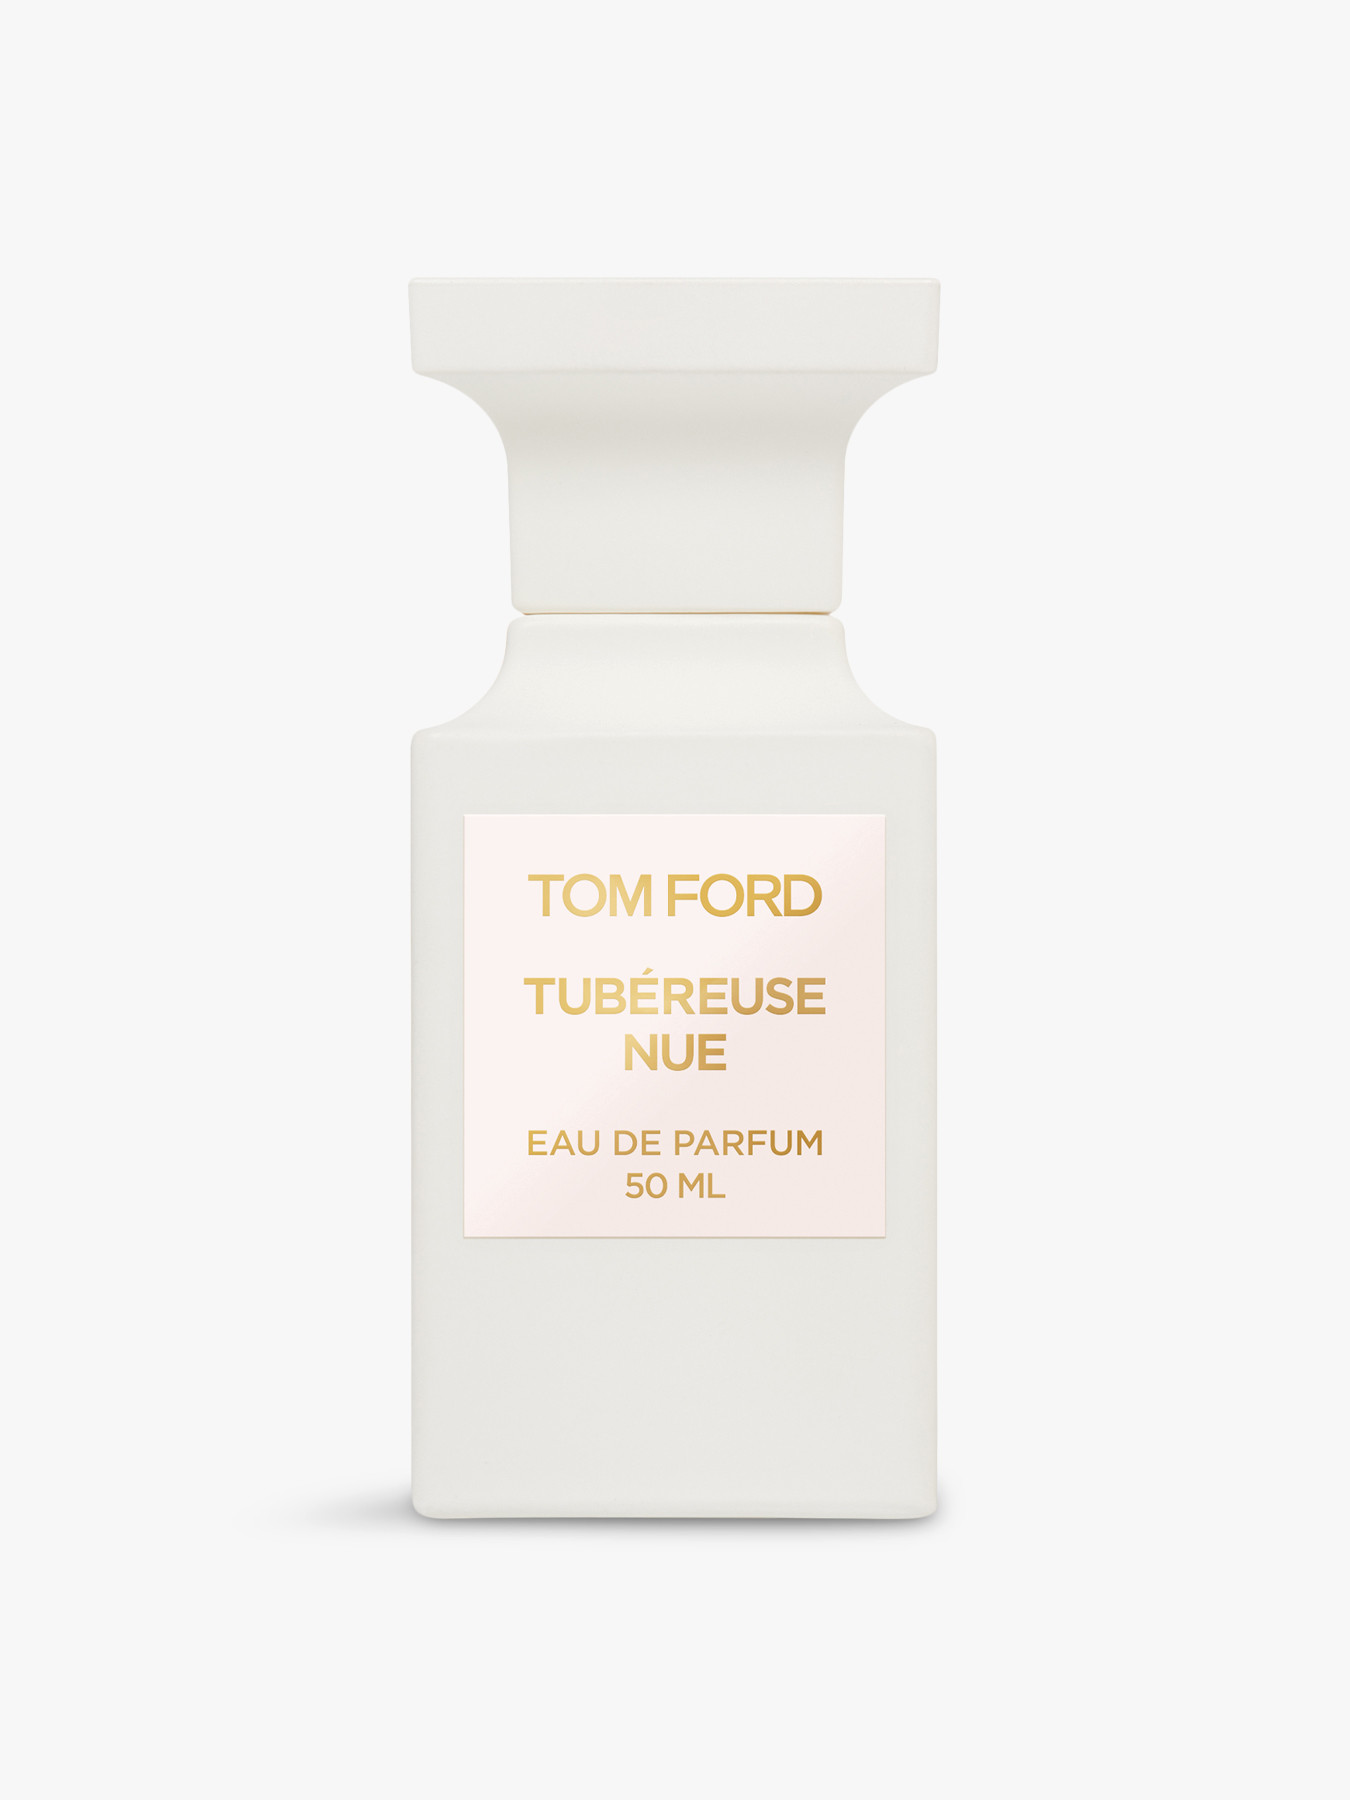 Tom Ford Tubereuse Nue Eau De Parfum 50ml